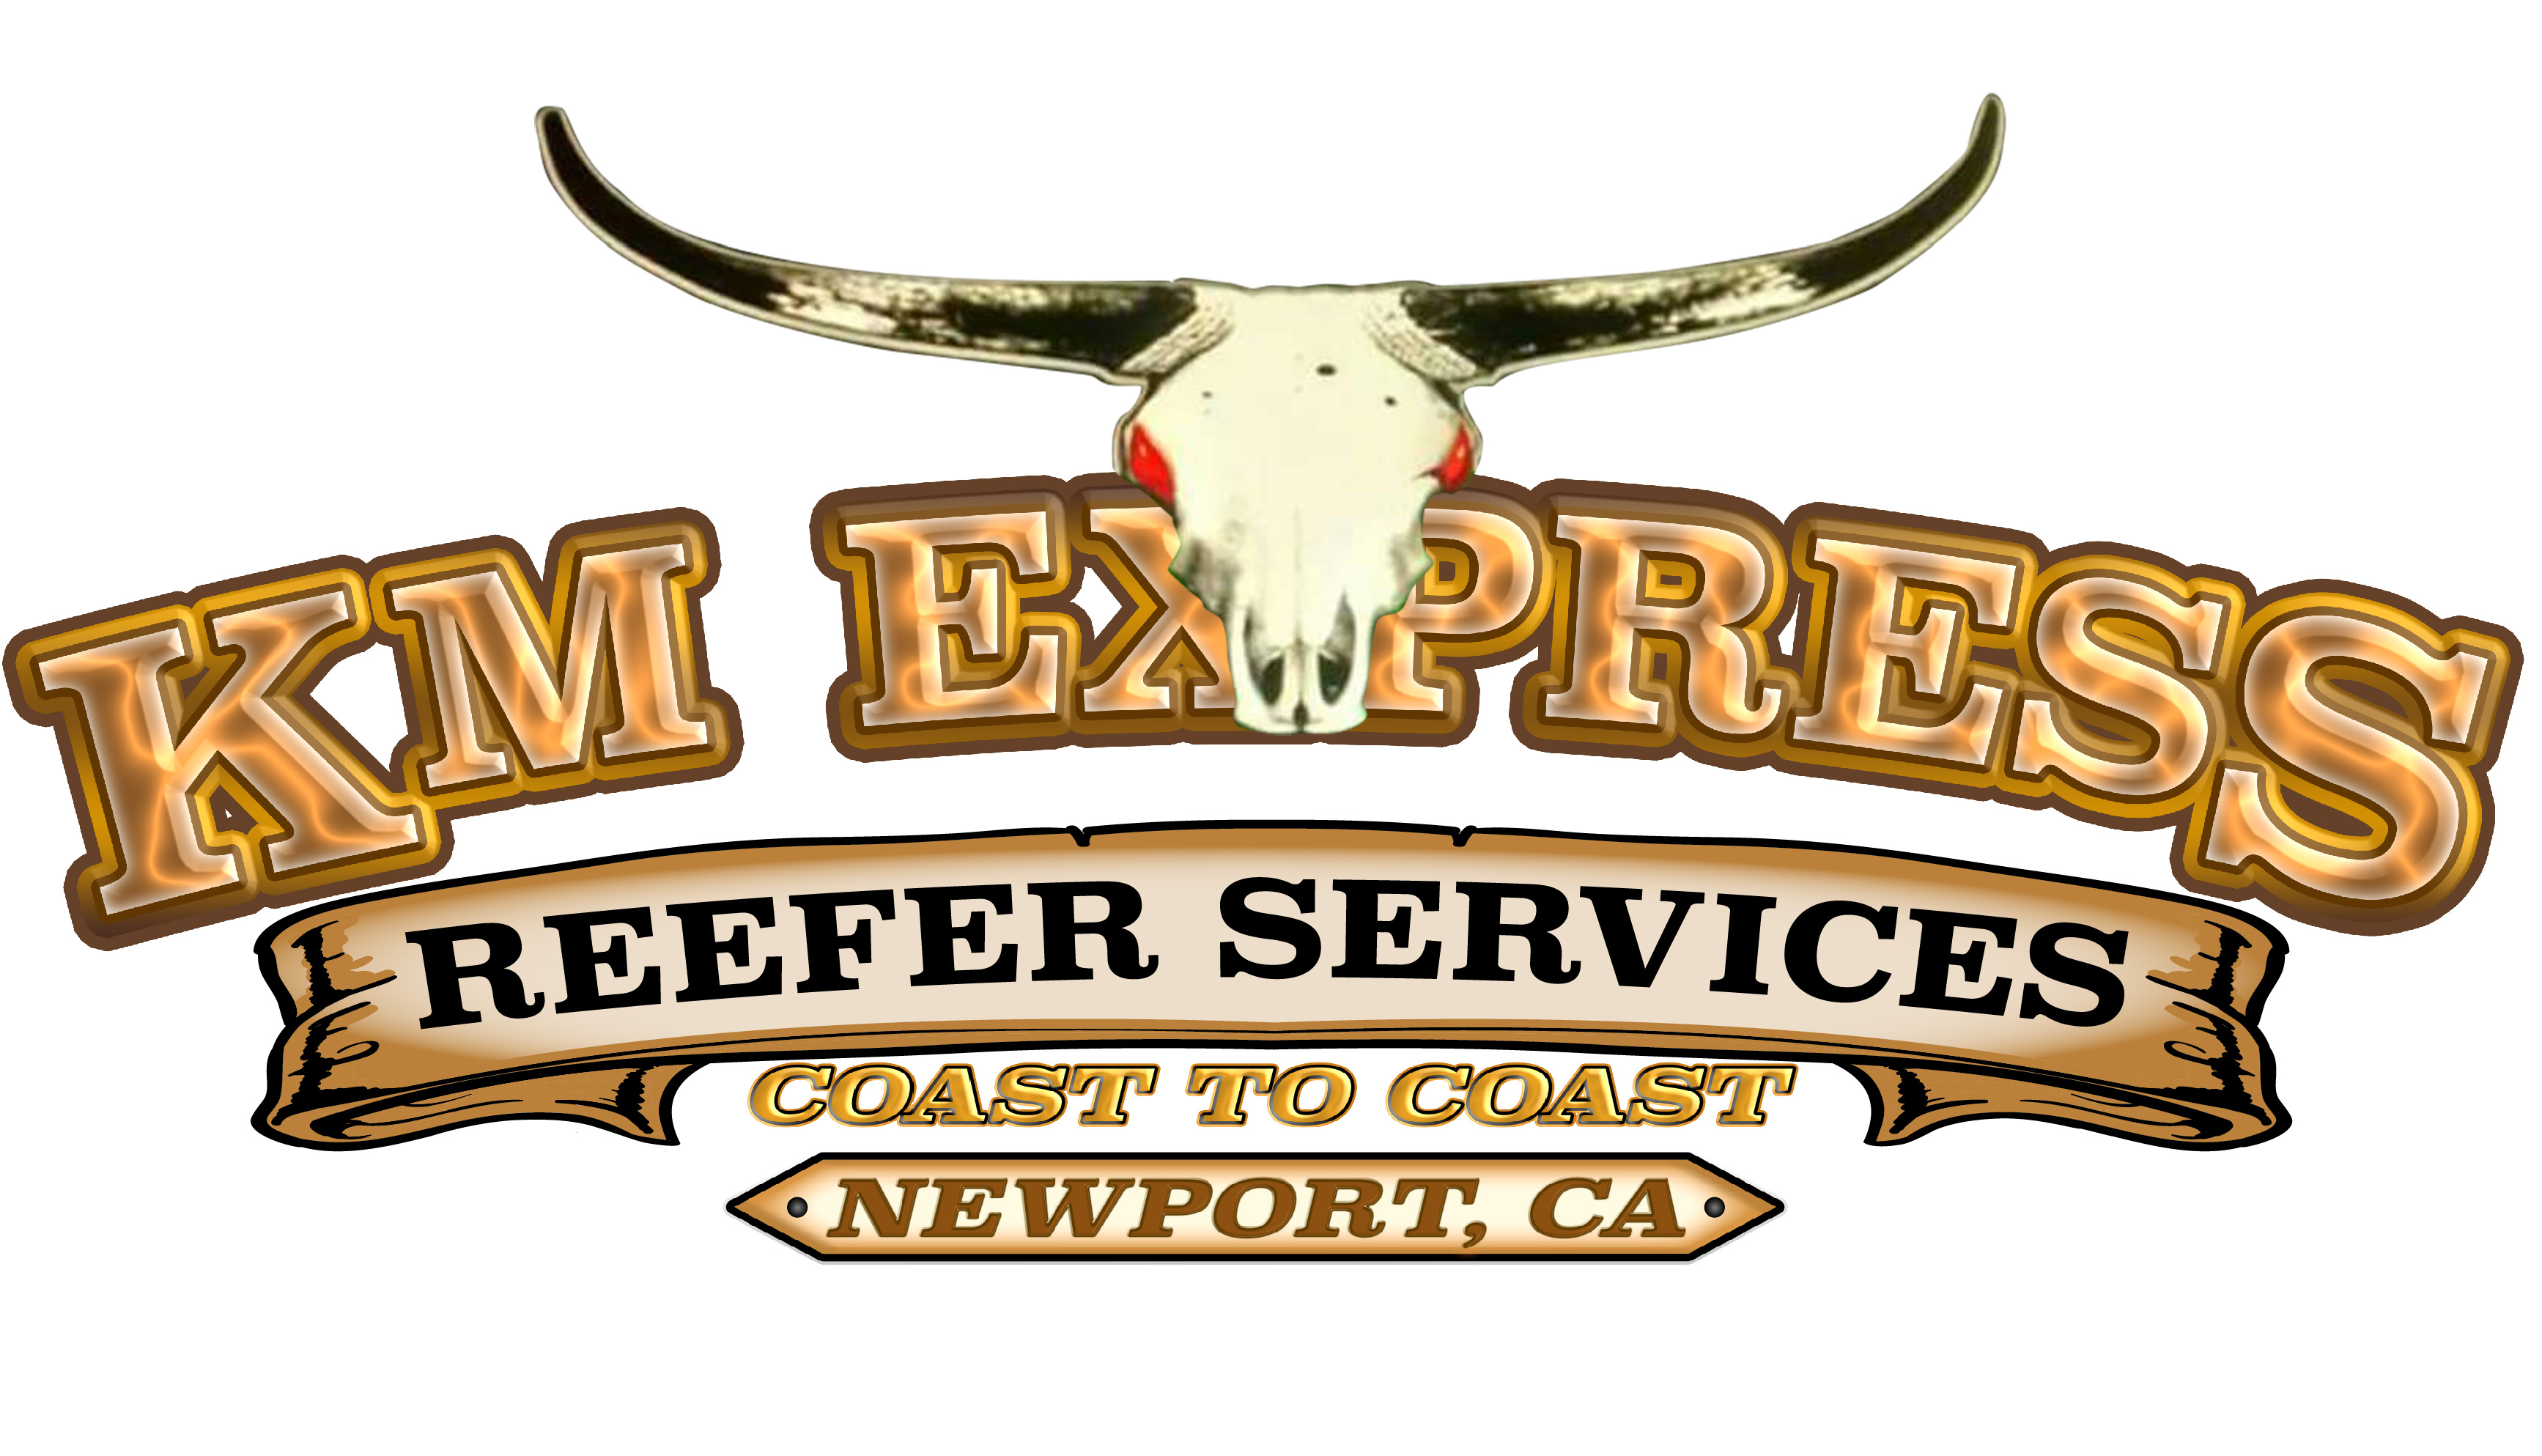 KM Express